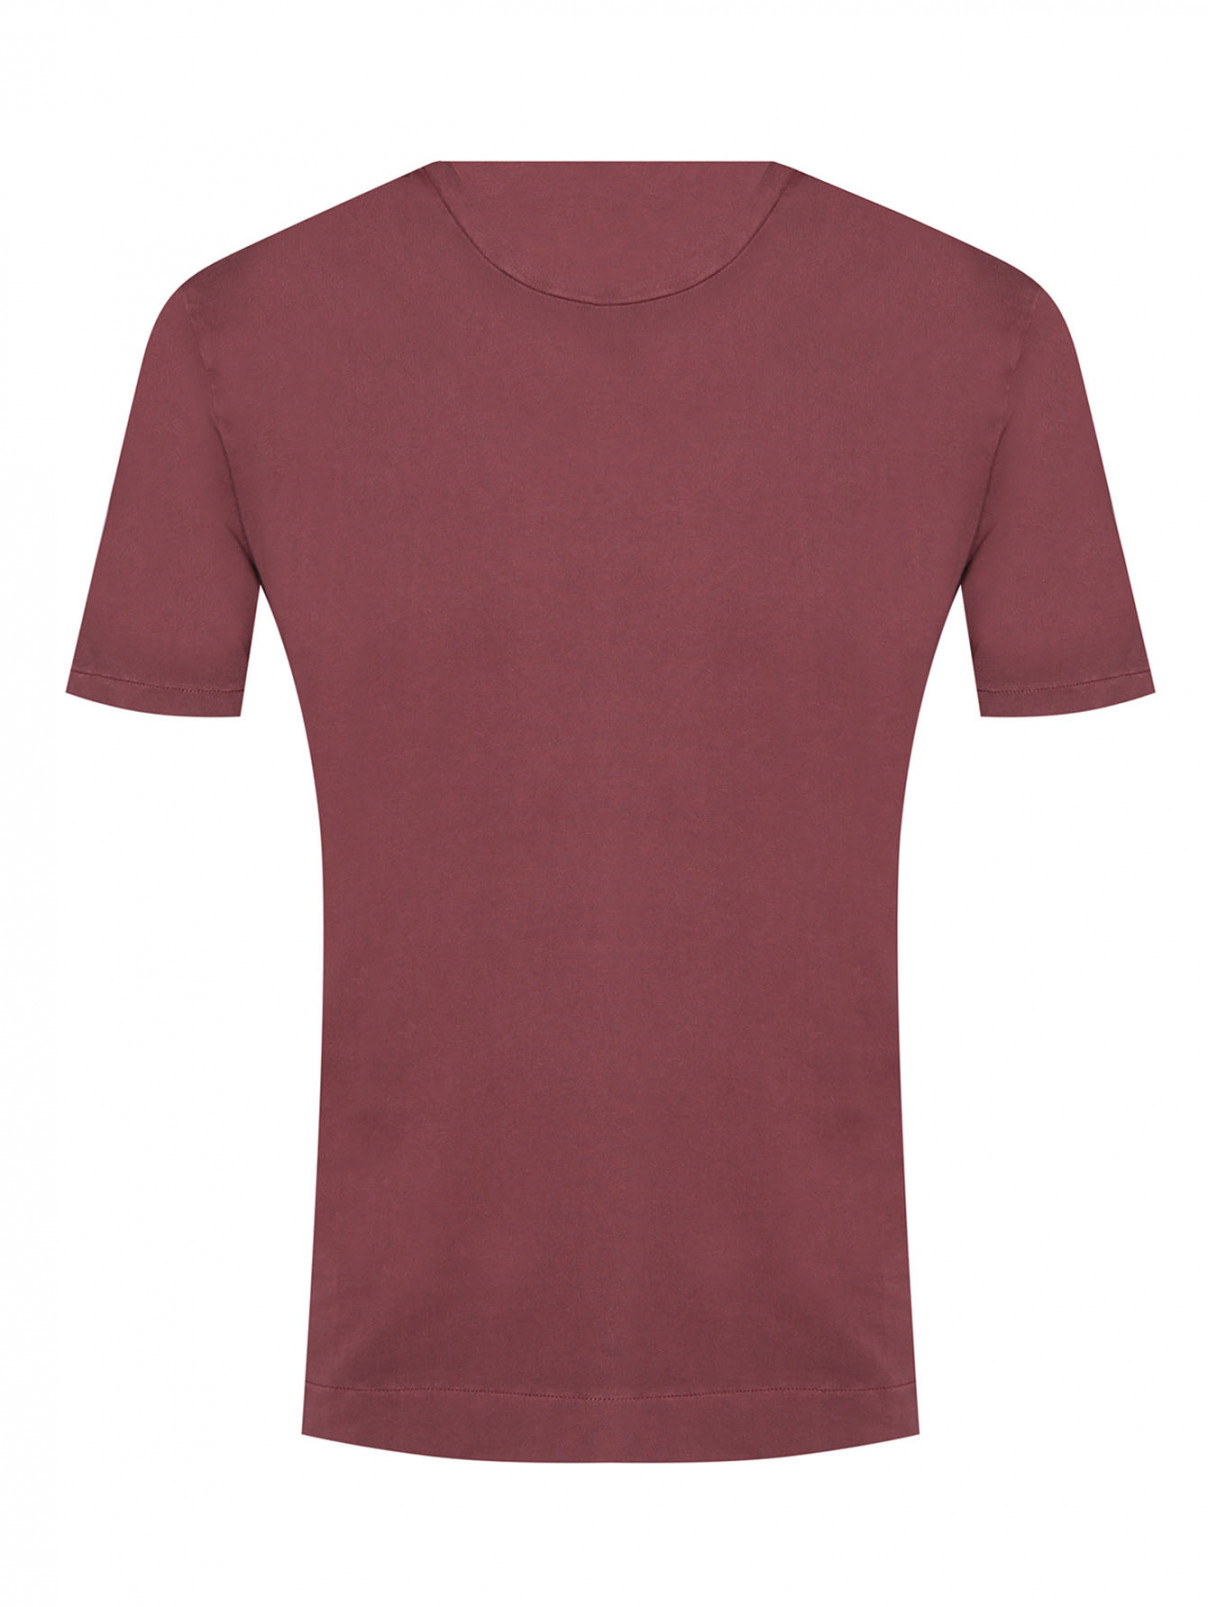 Однотонная футболка из хлопка Boglioli  –  Общий вид  – Цвет:  Красный